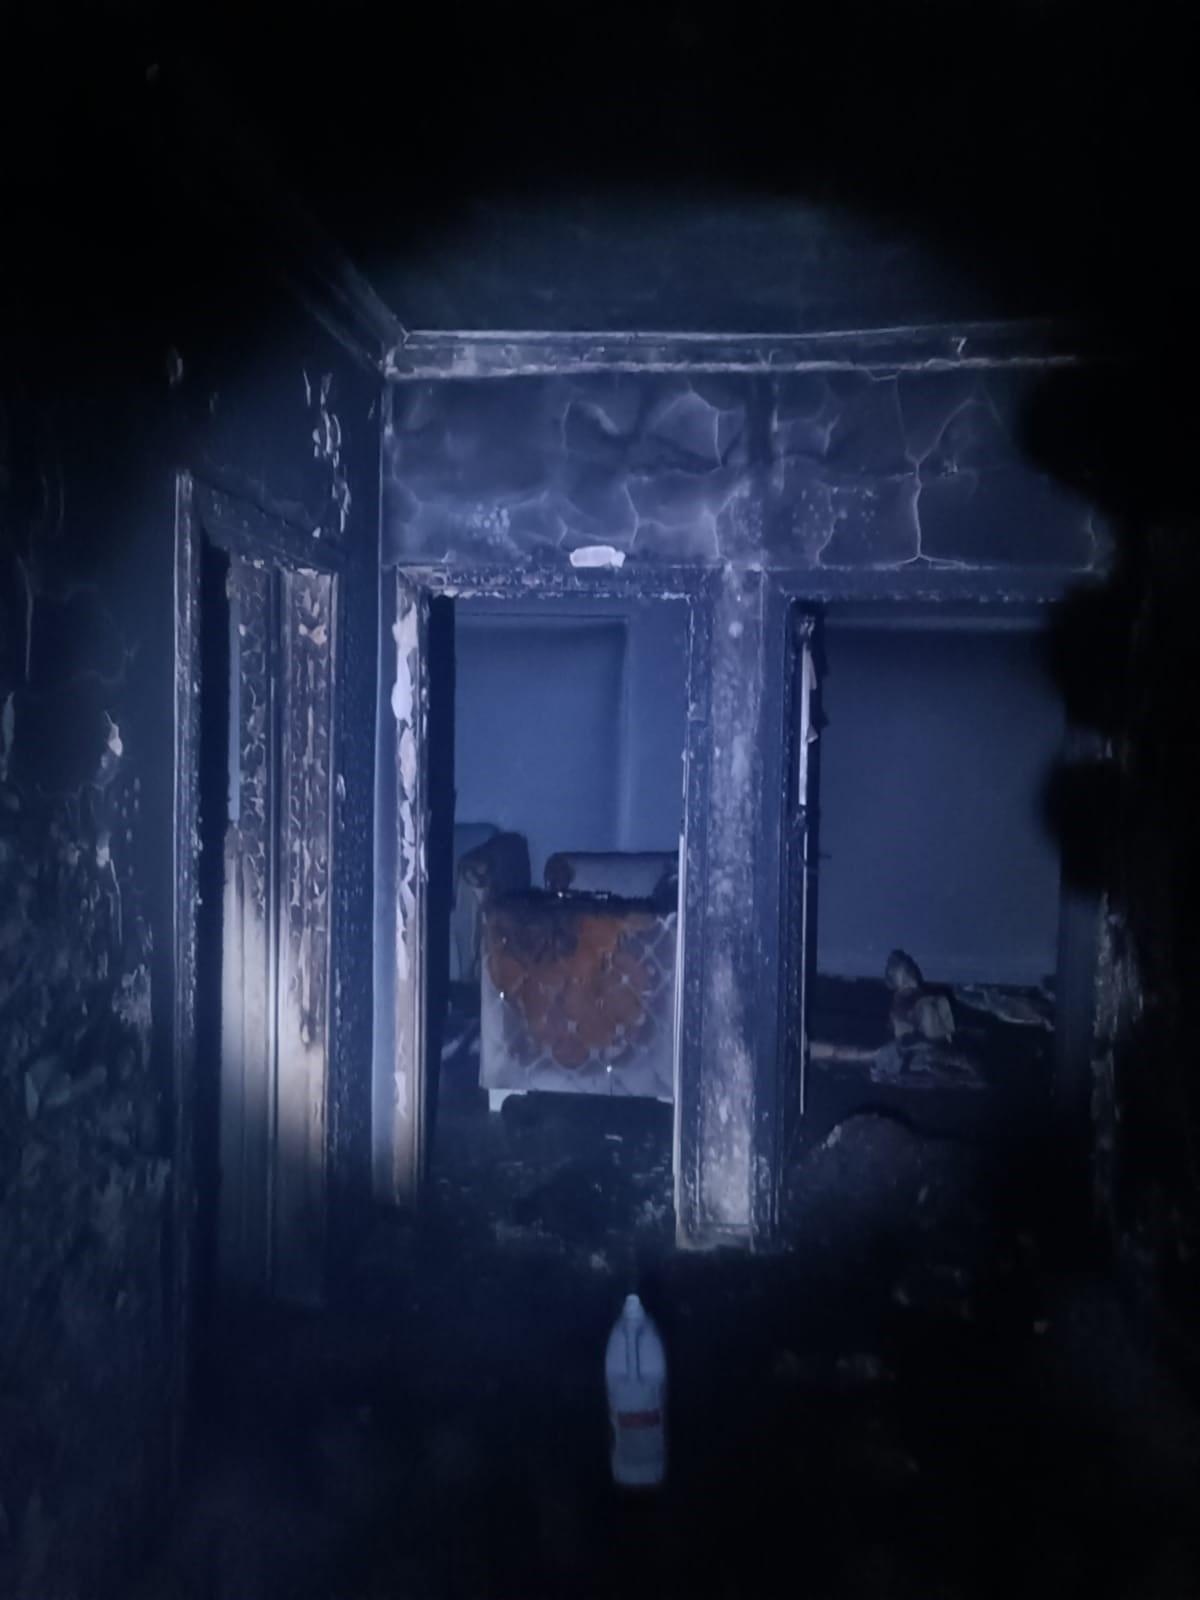 Diyarbakır'da bir kiracı, önce evi tüple tuzakladı sonra ateşe verdi